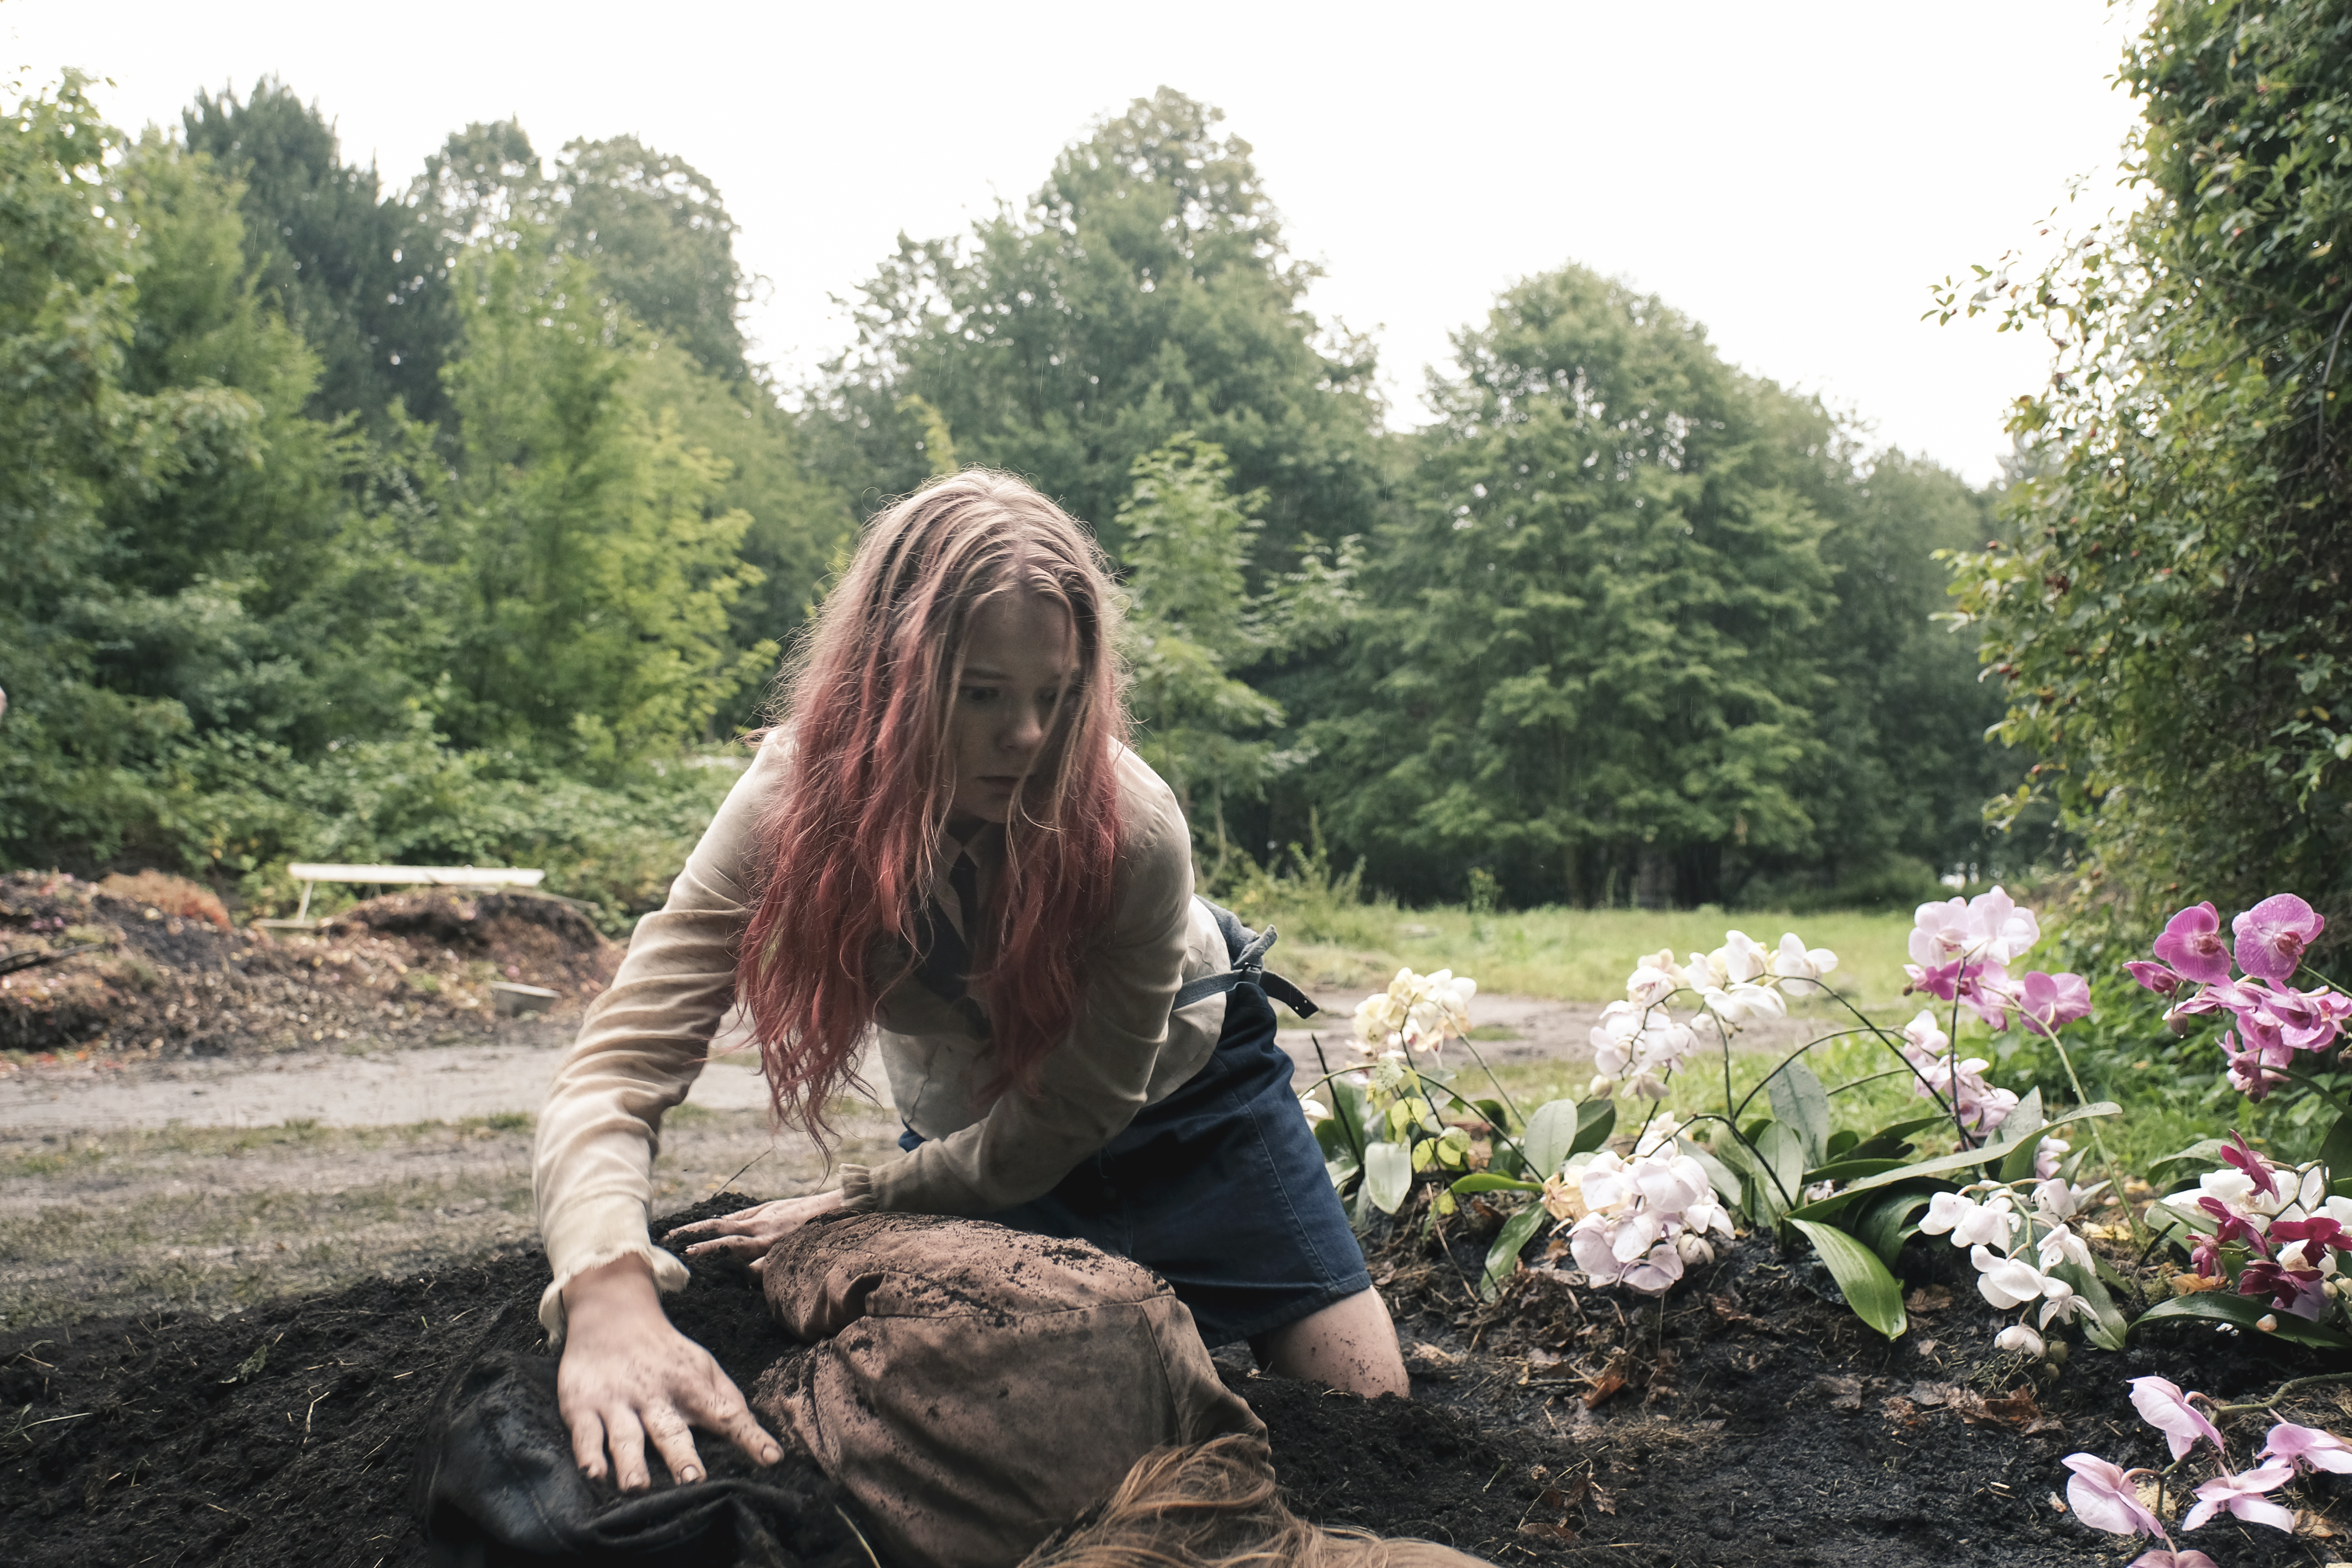 kadr z filmu Endzeit, 2018, reż. Carolina Hellsgård, Vivi znajduje Evę w ziemi i wykopuje ją, źródło: promo 